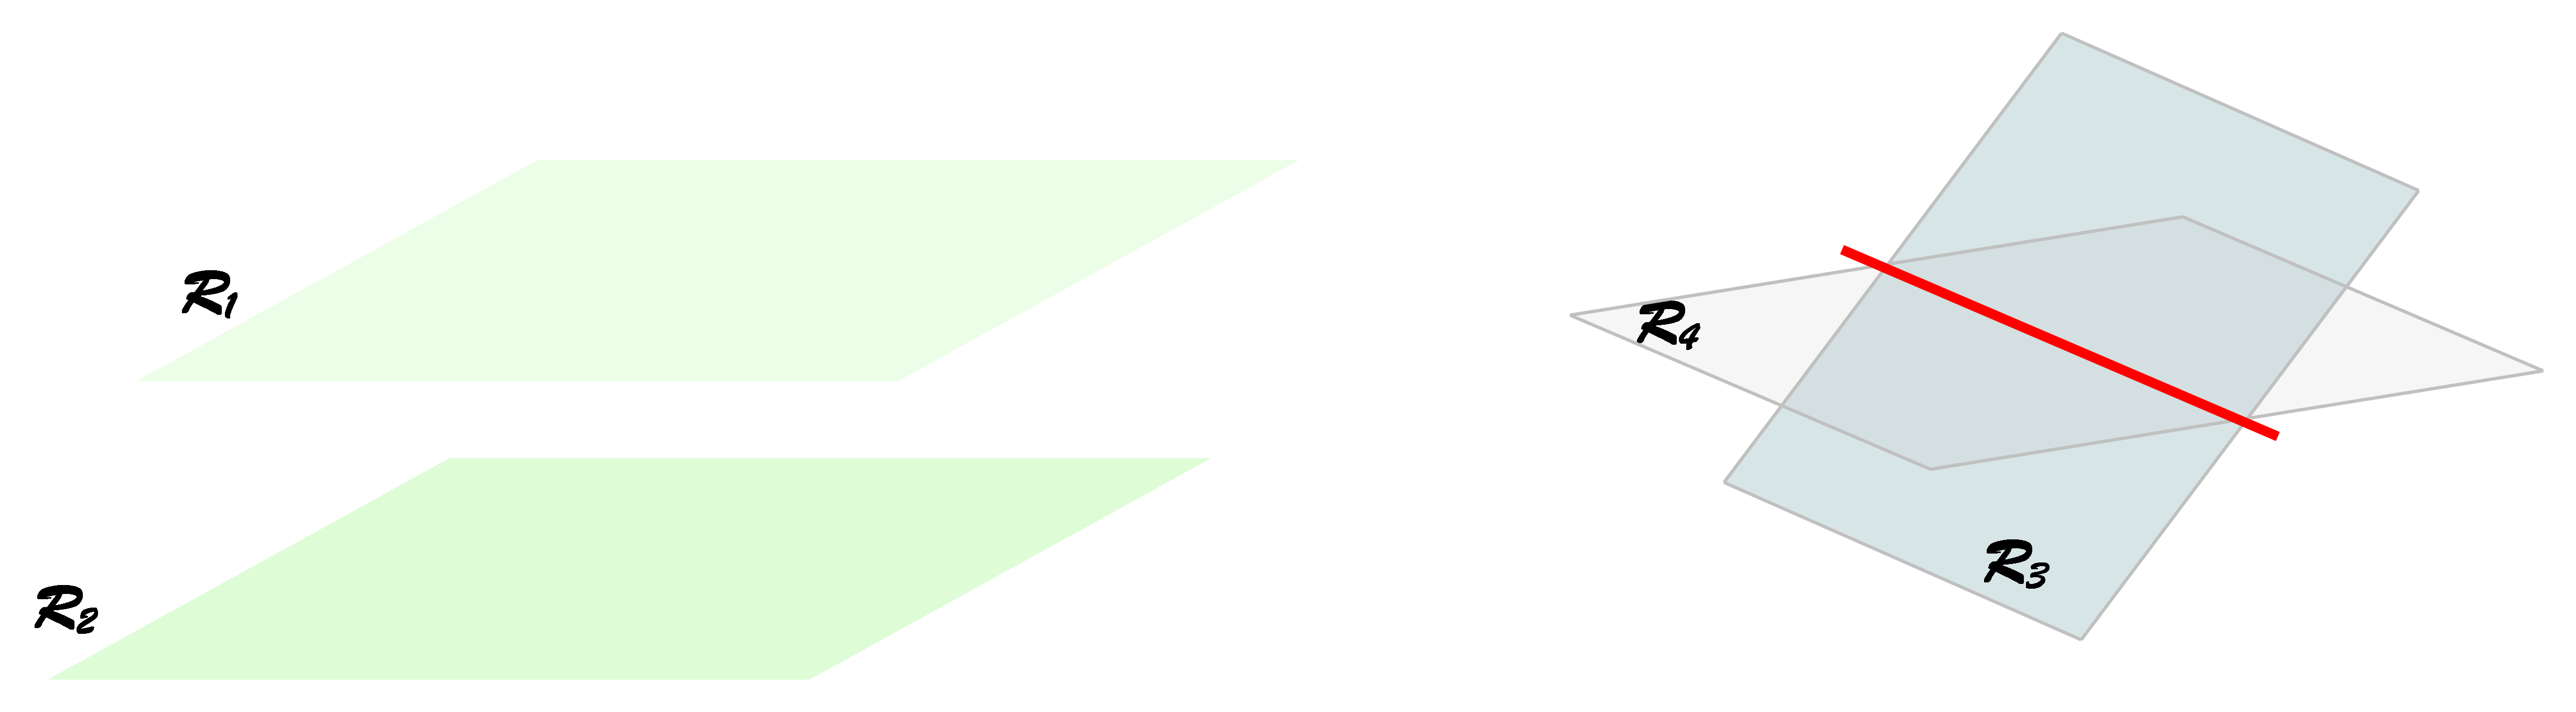 Slike prikazuju položaje ravnina u prostoru.